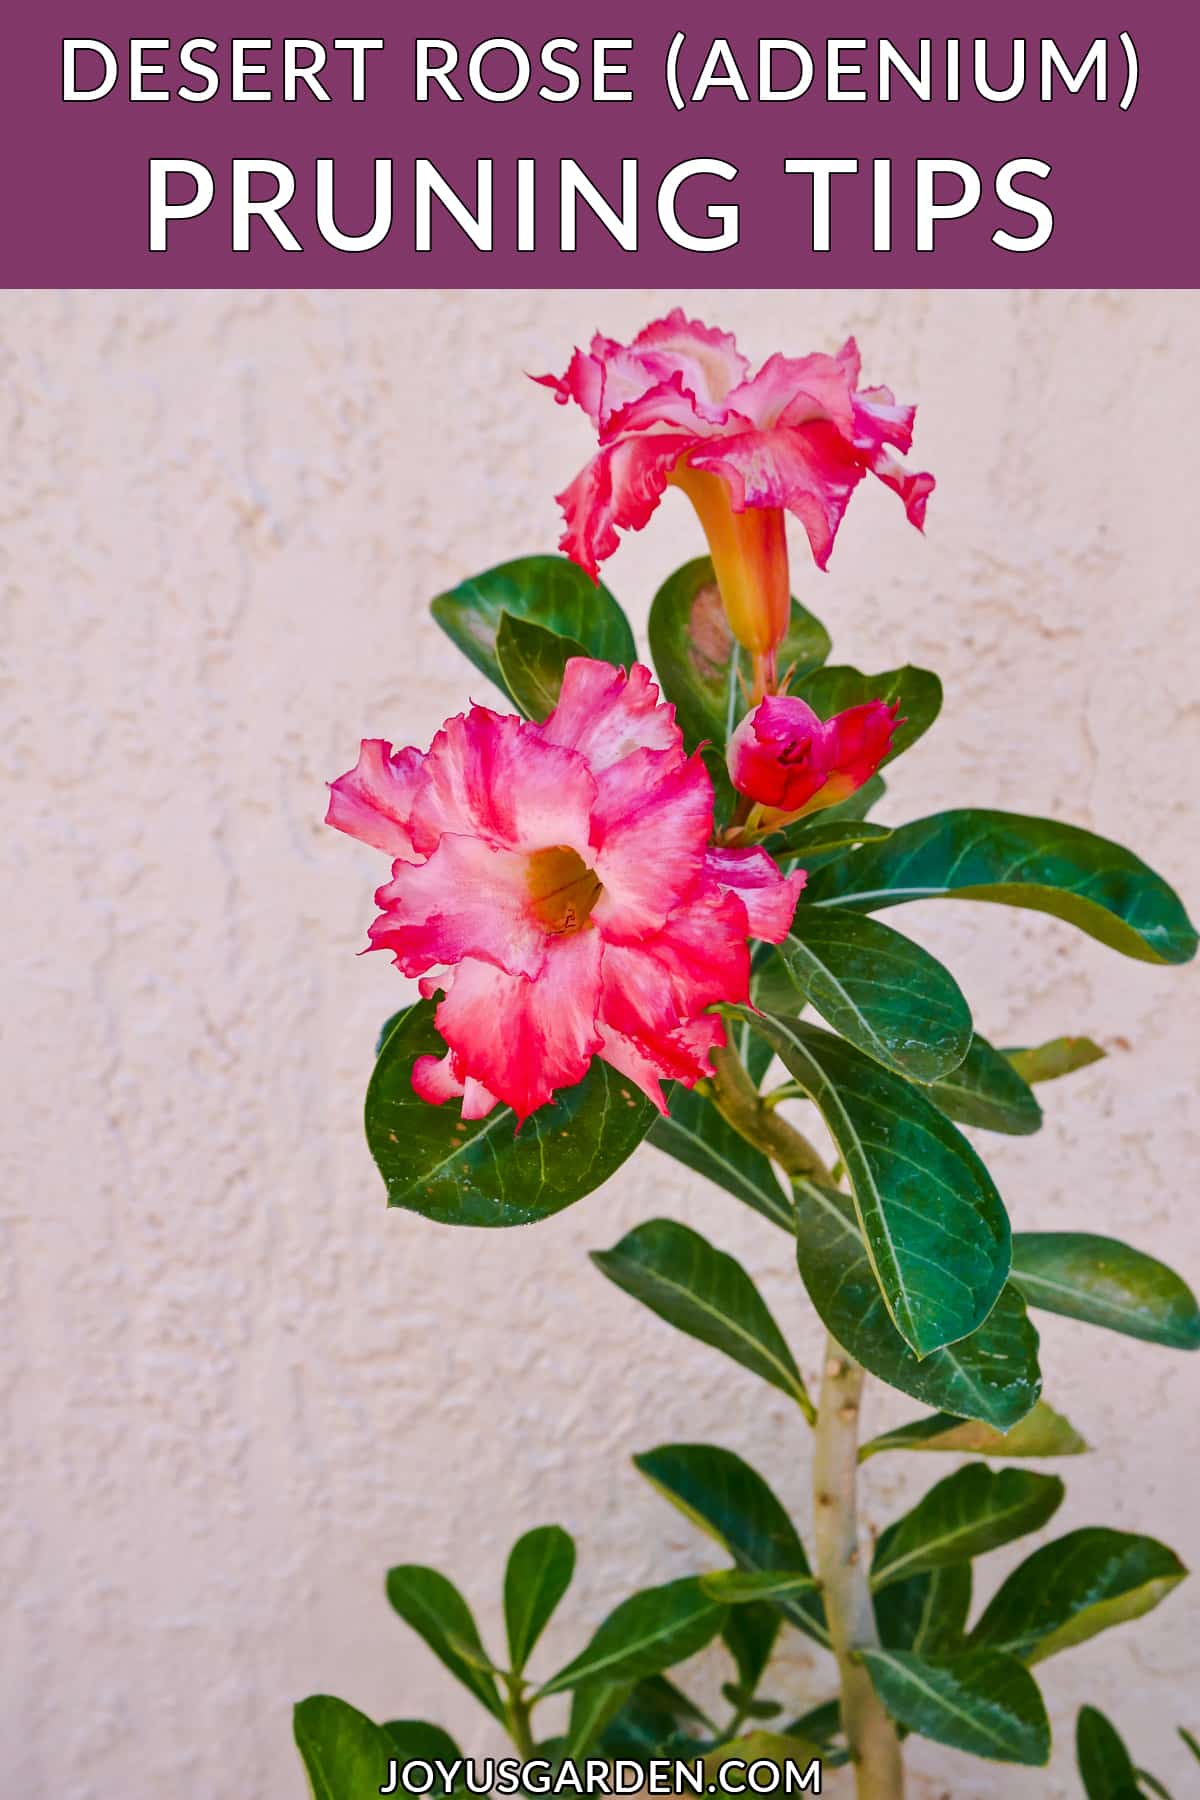  Desert Rose Pruning: Paano Ko Pinutol ang Aking Adenium